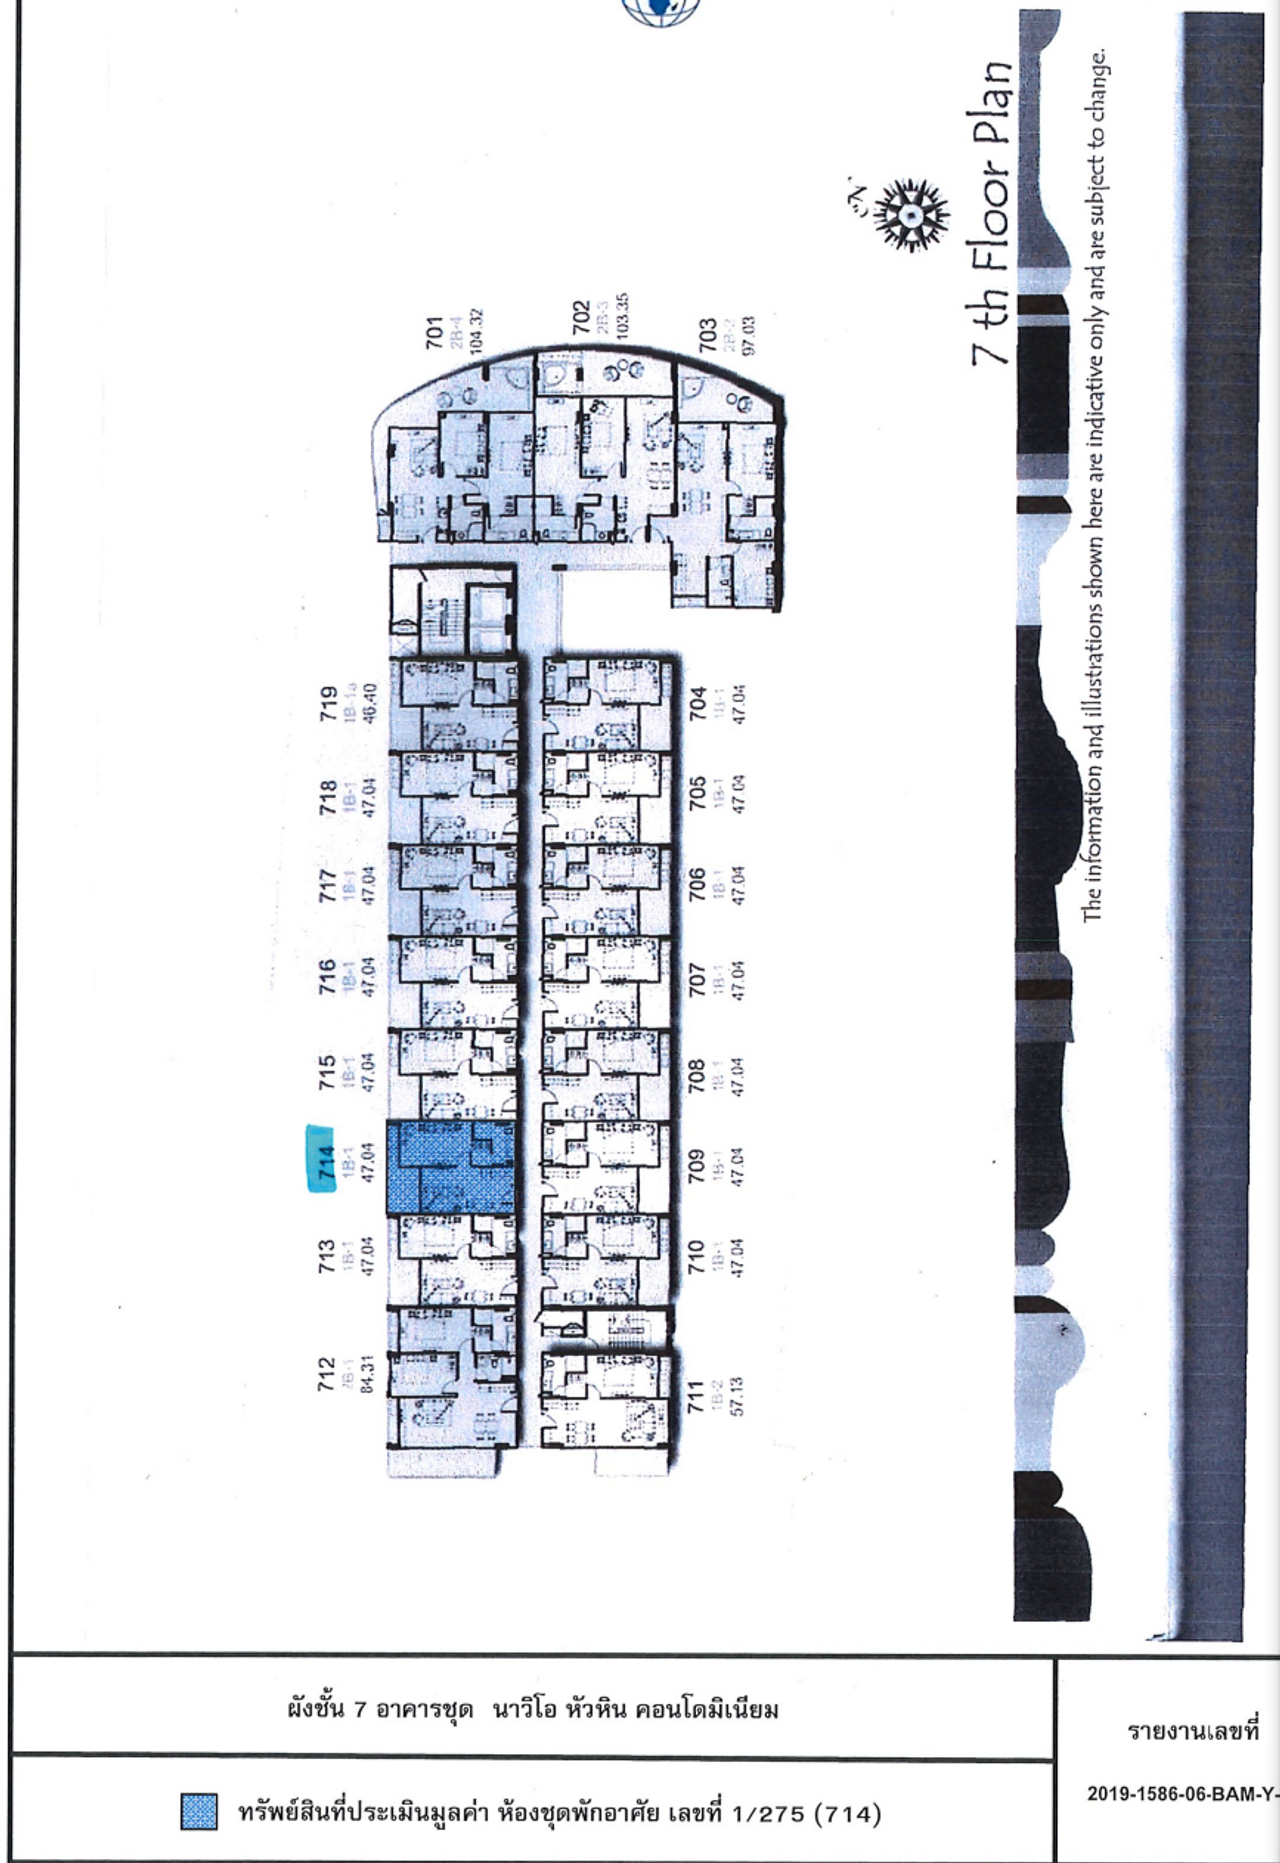 รูปภาพเพิ่มเติม ขายห้องชุดพักอาศัยนาวิโอ-หัวหิน-คอนโด-ประจวบคีรีขันธ์-ทรัพย์-NPA-บสก - ลำดับที่ 14